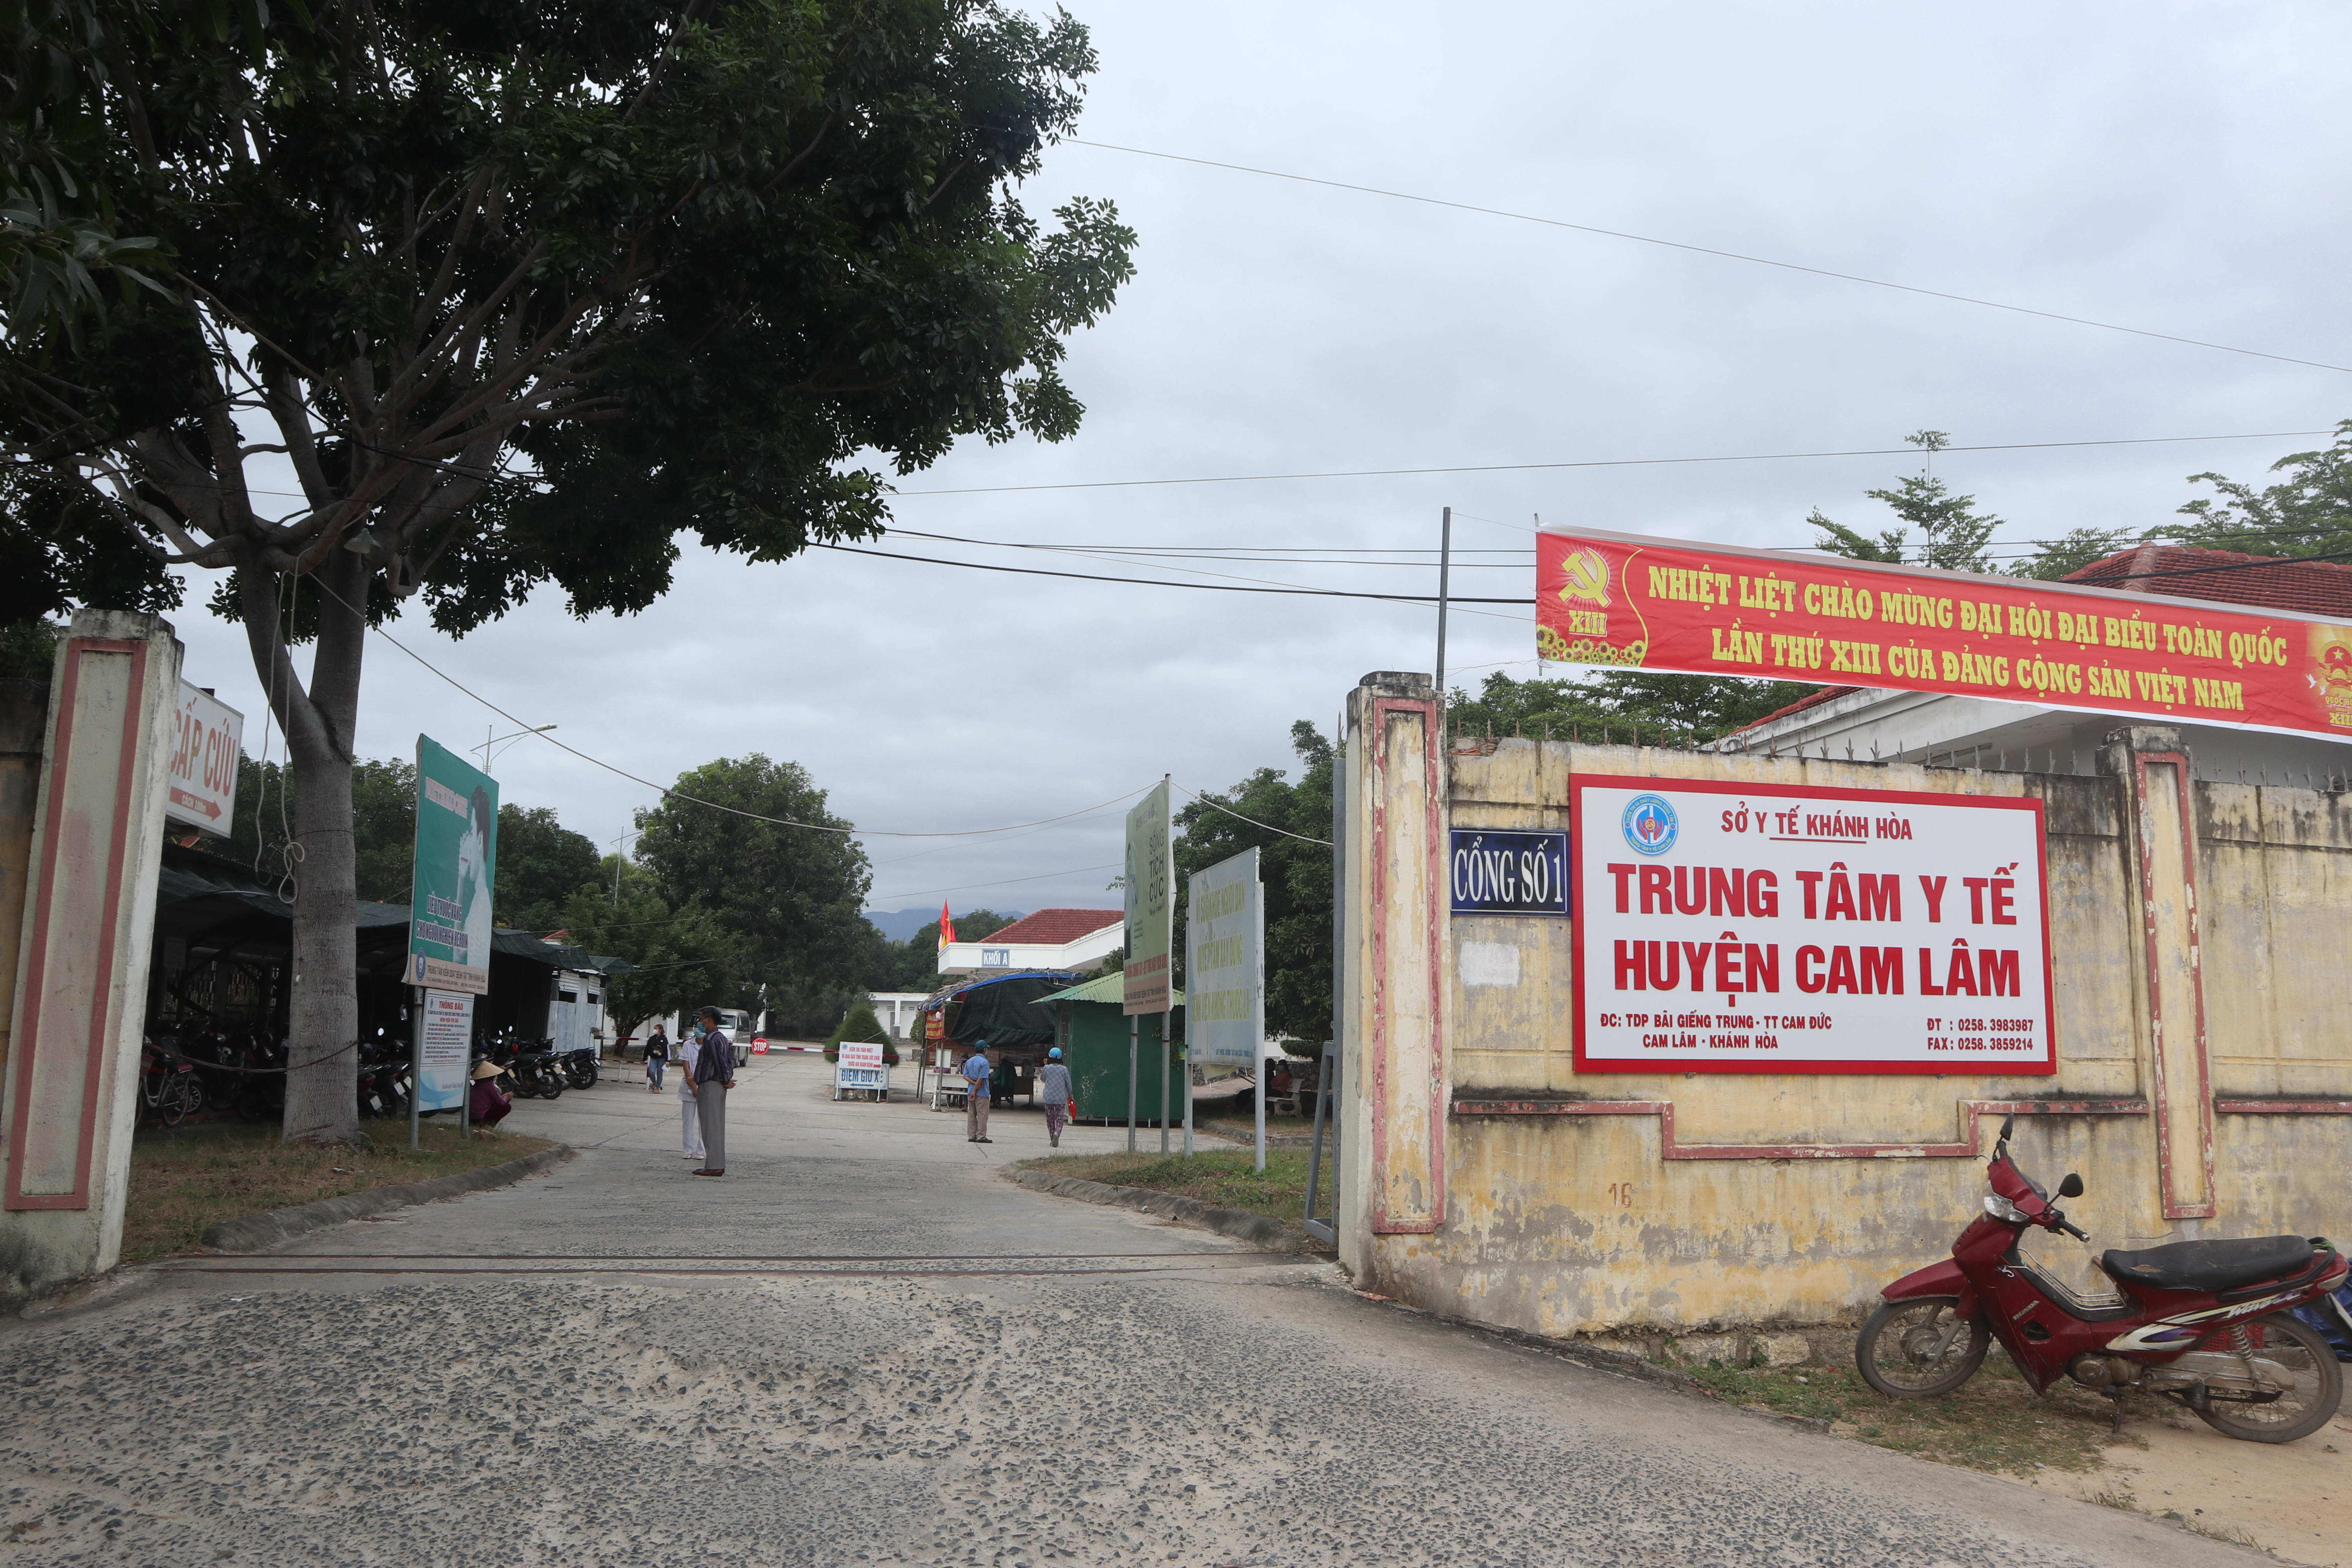 Thiết lập bệnh viện dã chiến tại Trung tâm Y tế huyện Cam Lâm